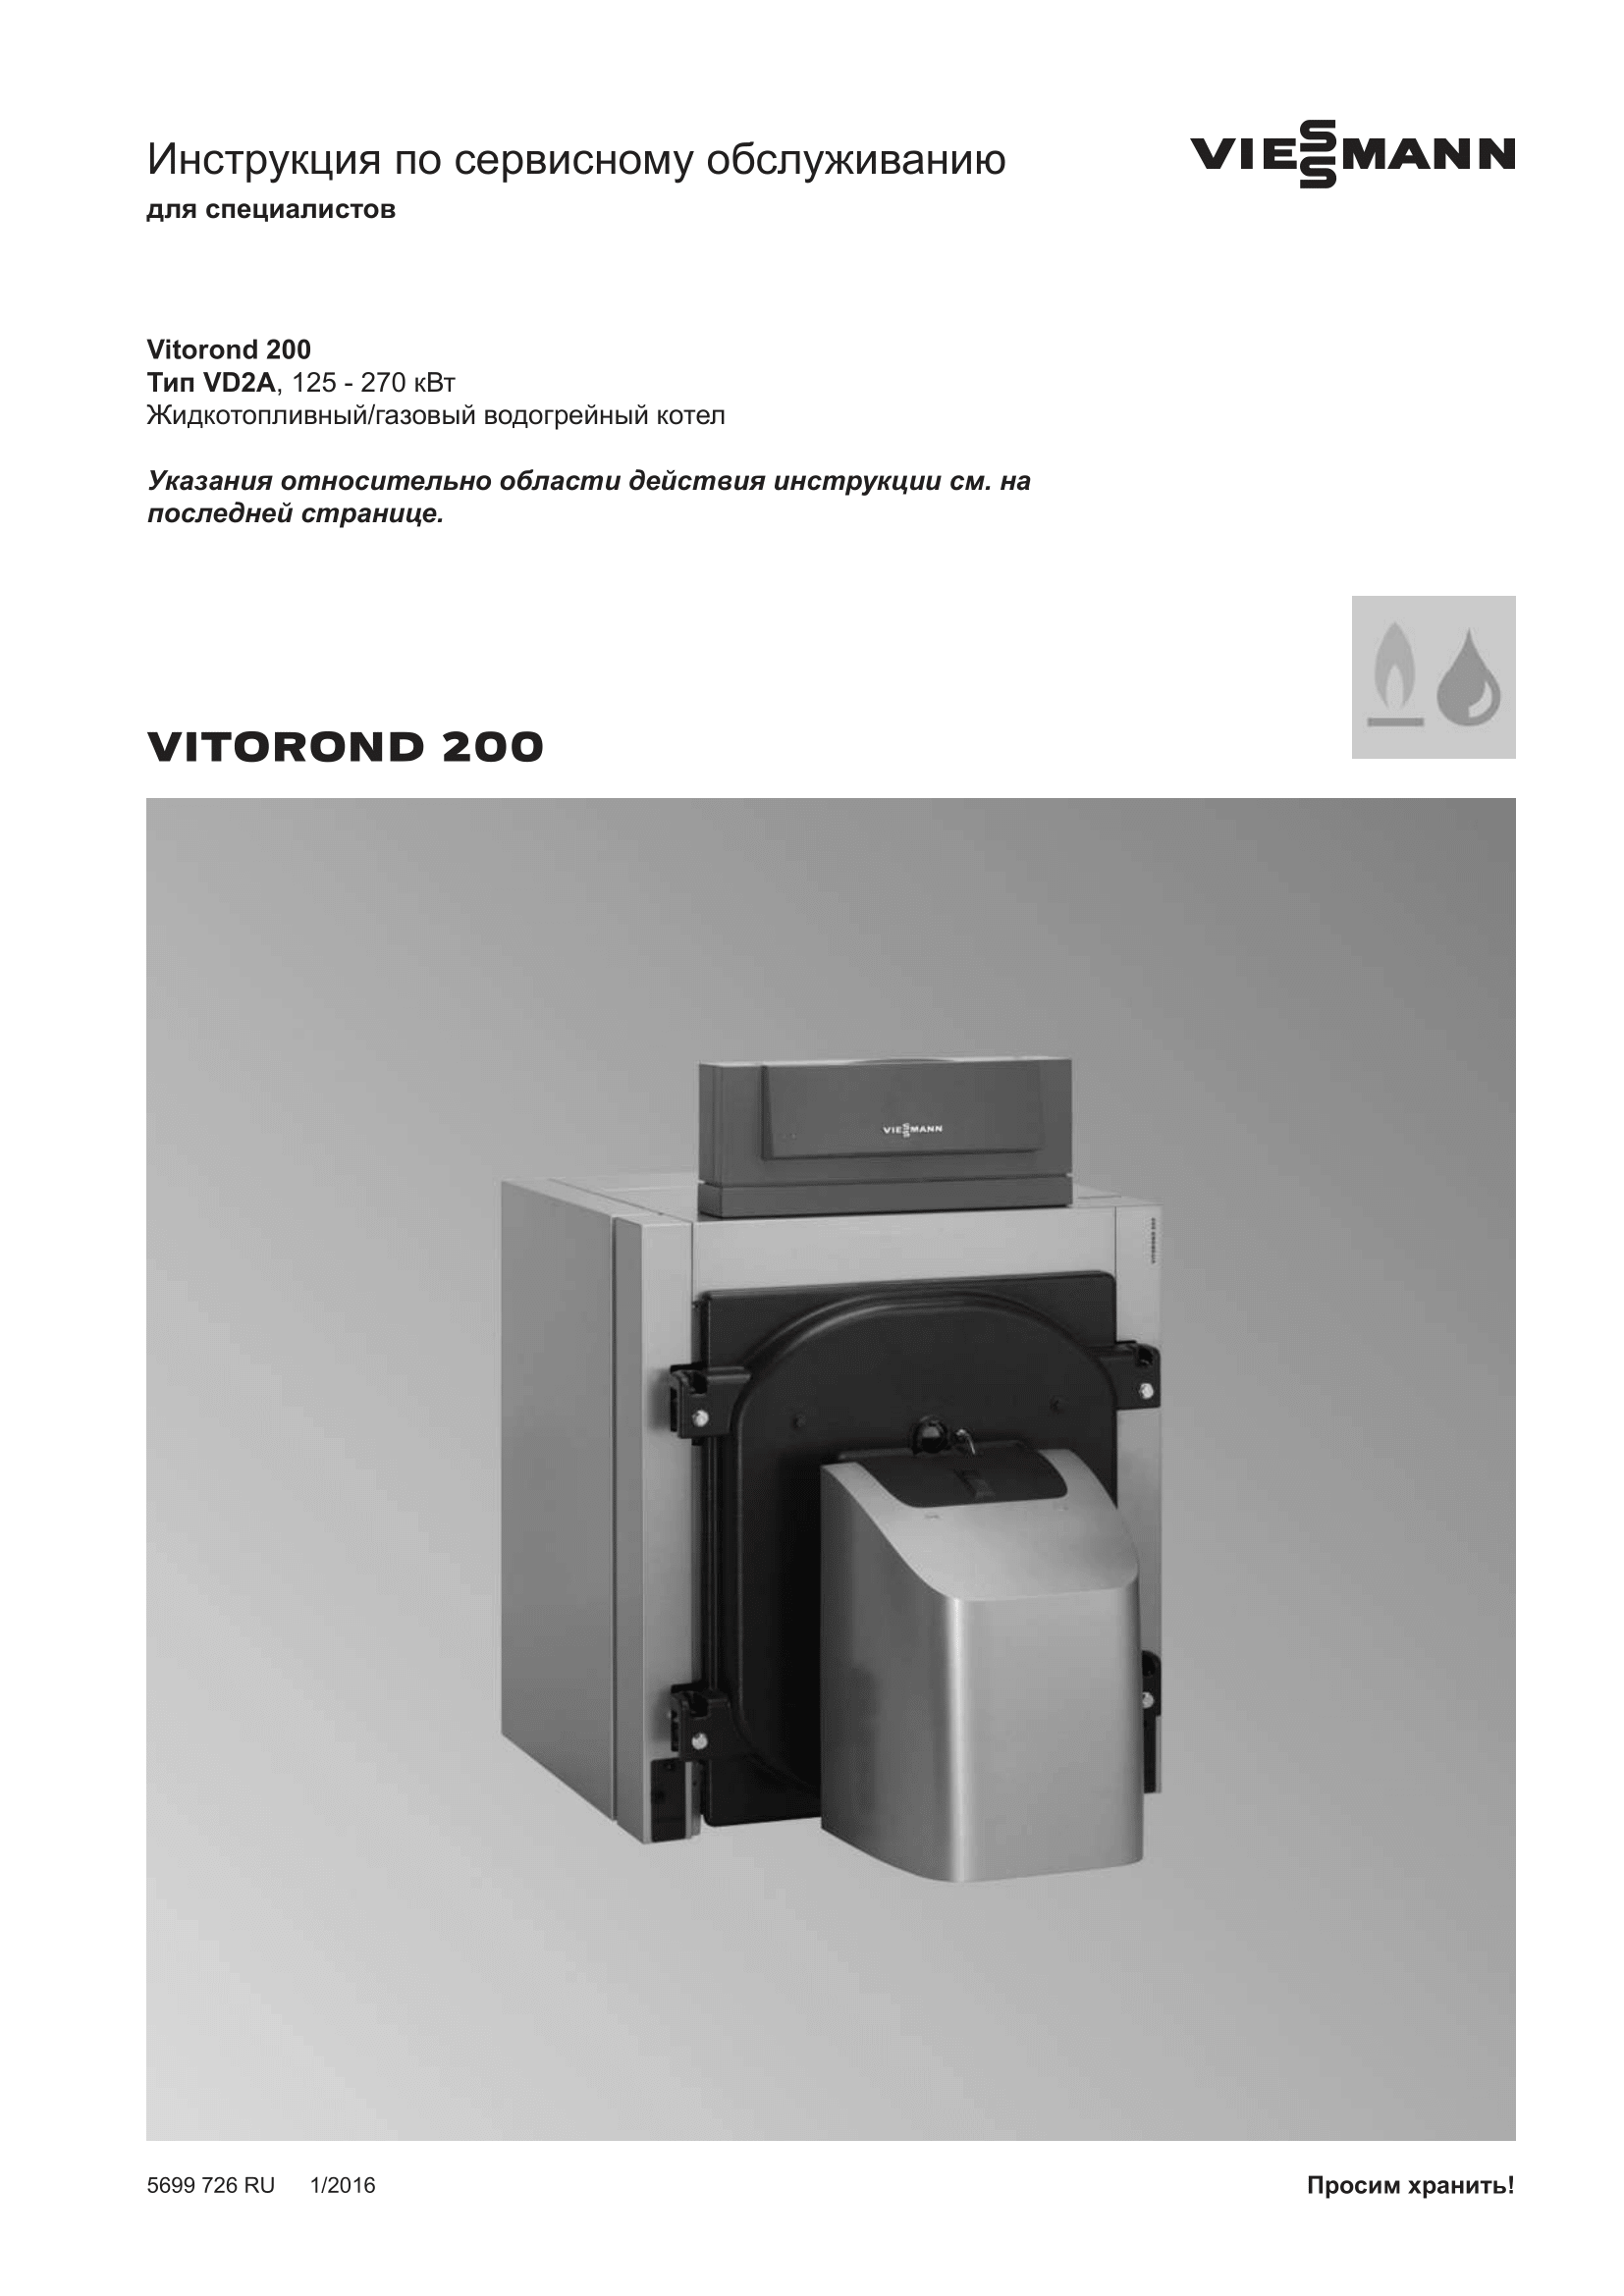 Фотография Инструкция по сервисному обслуживанию для низкотемпературного водогрейного котла Vitorond 200 VD2A